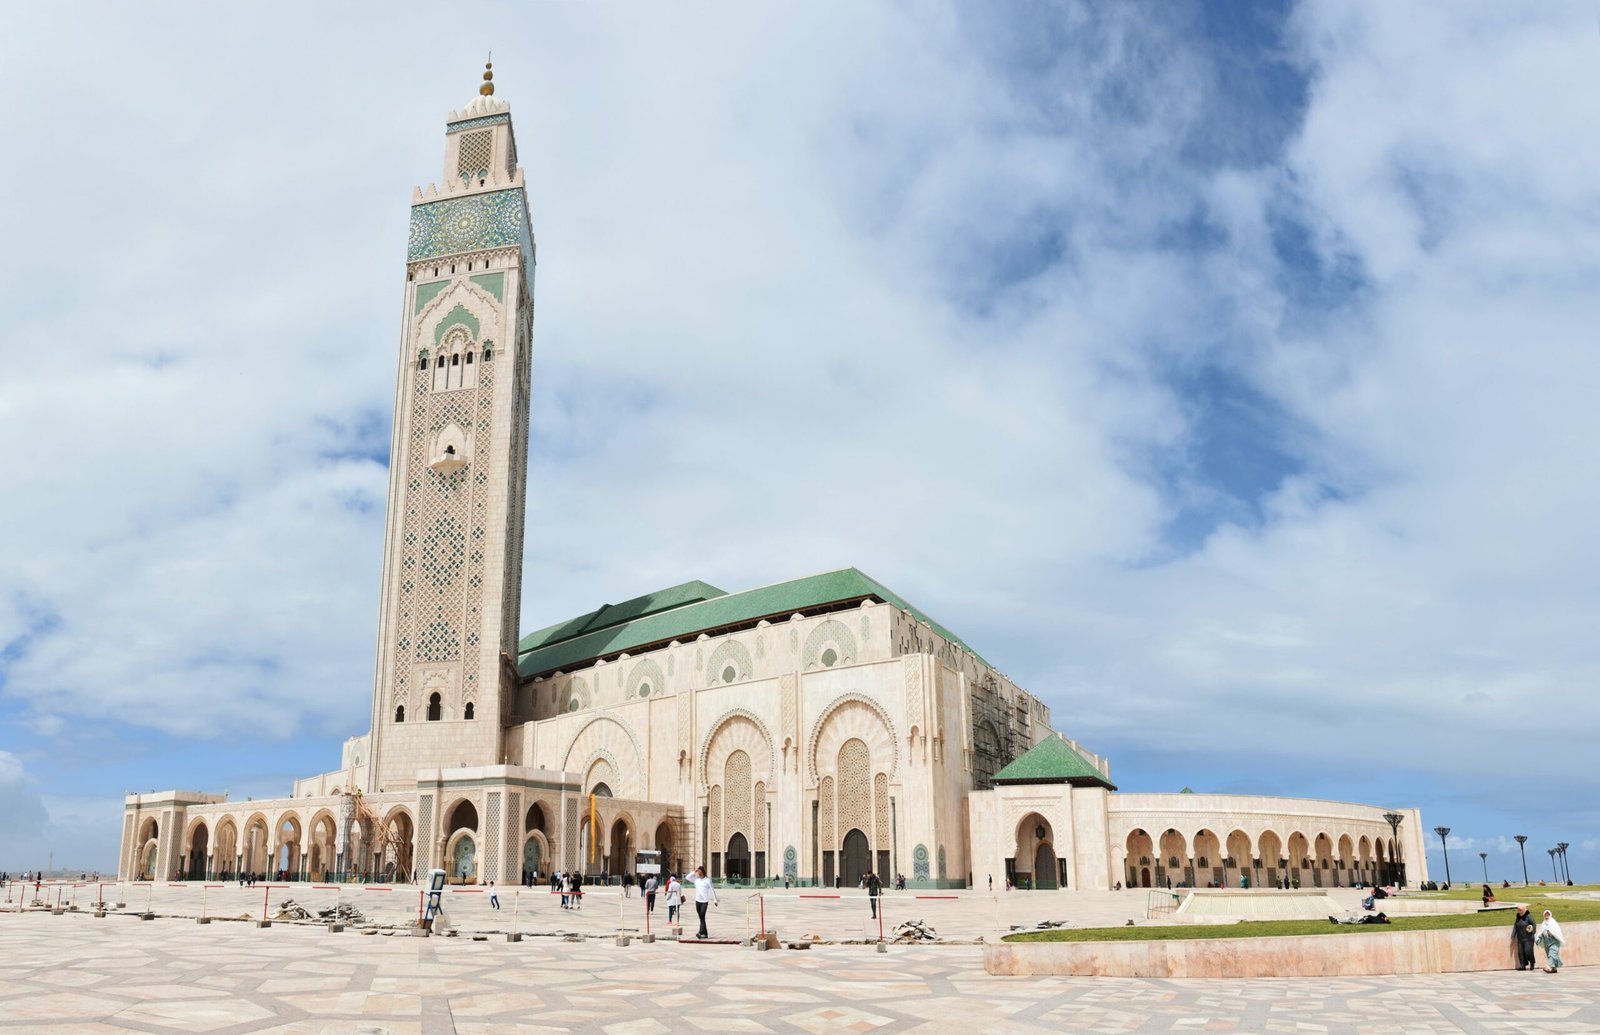 Mosquée Hassan II est l'une des plus grandes mosquées au monde